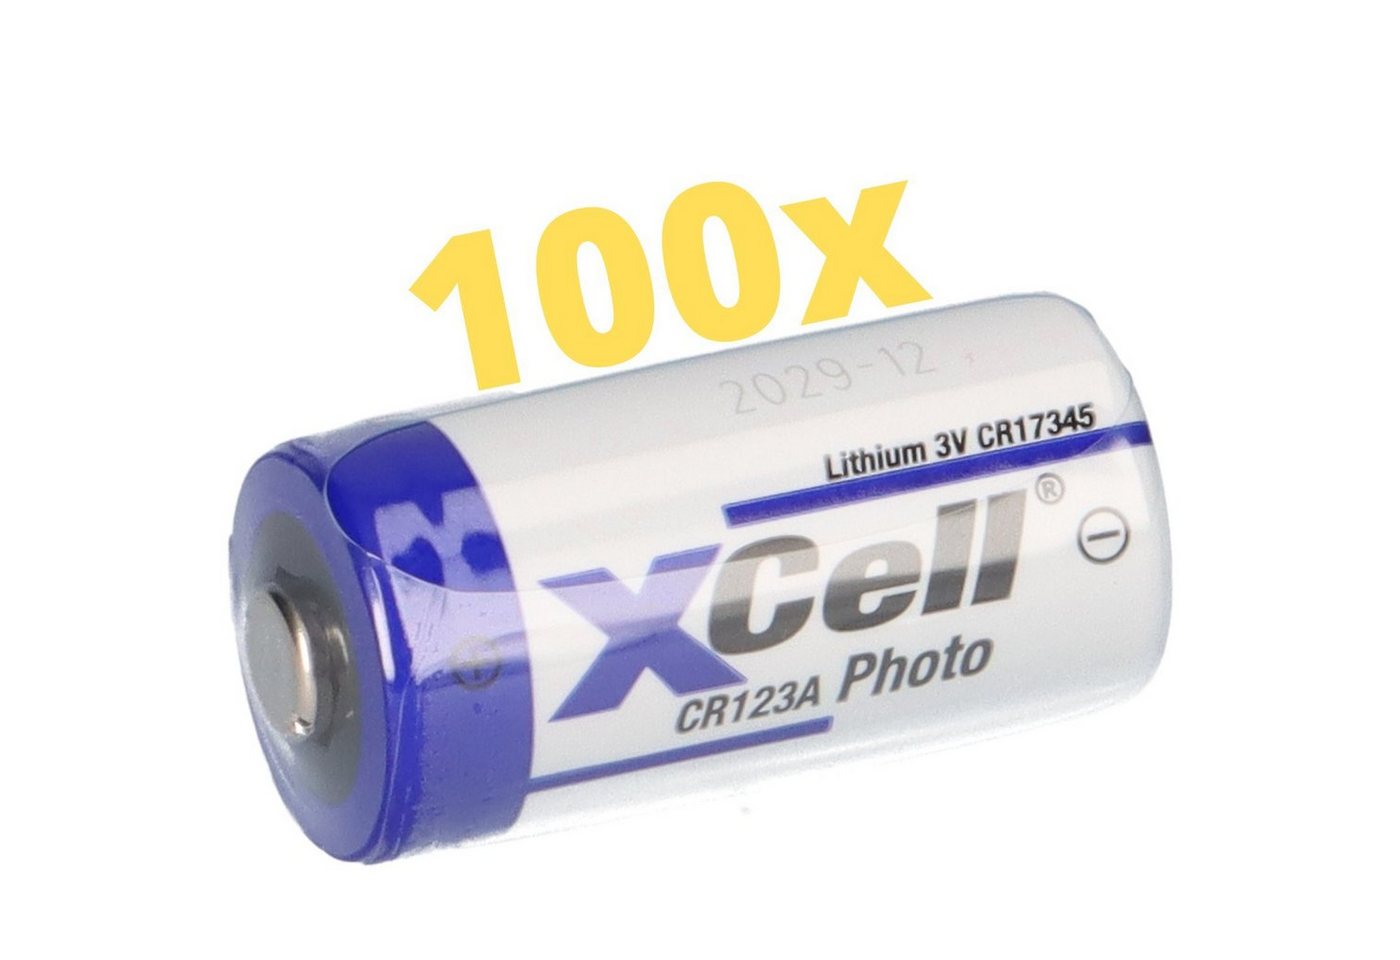 XCell 100x CR123A DL123A Batterien 3V CR17345 Ultra Lithium Foto Batterie von XCell